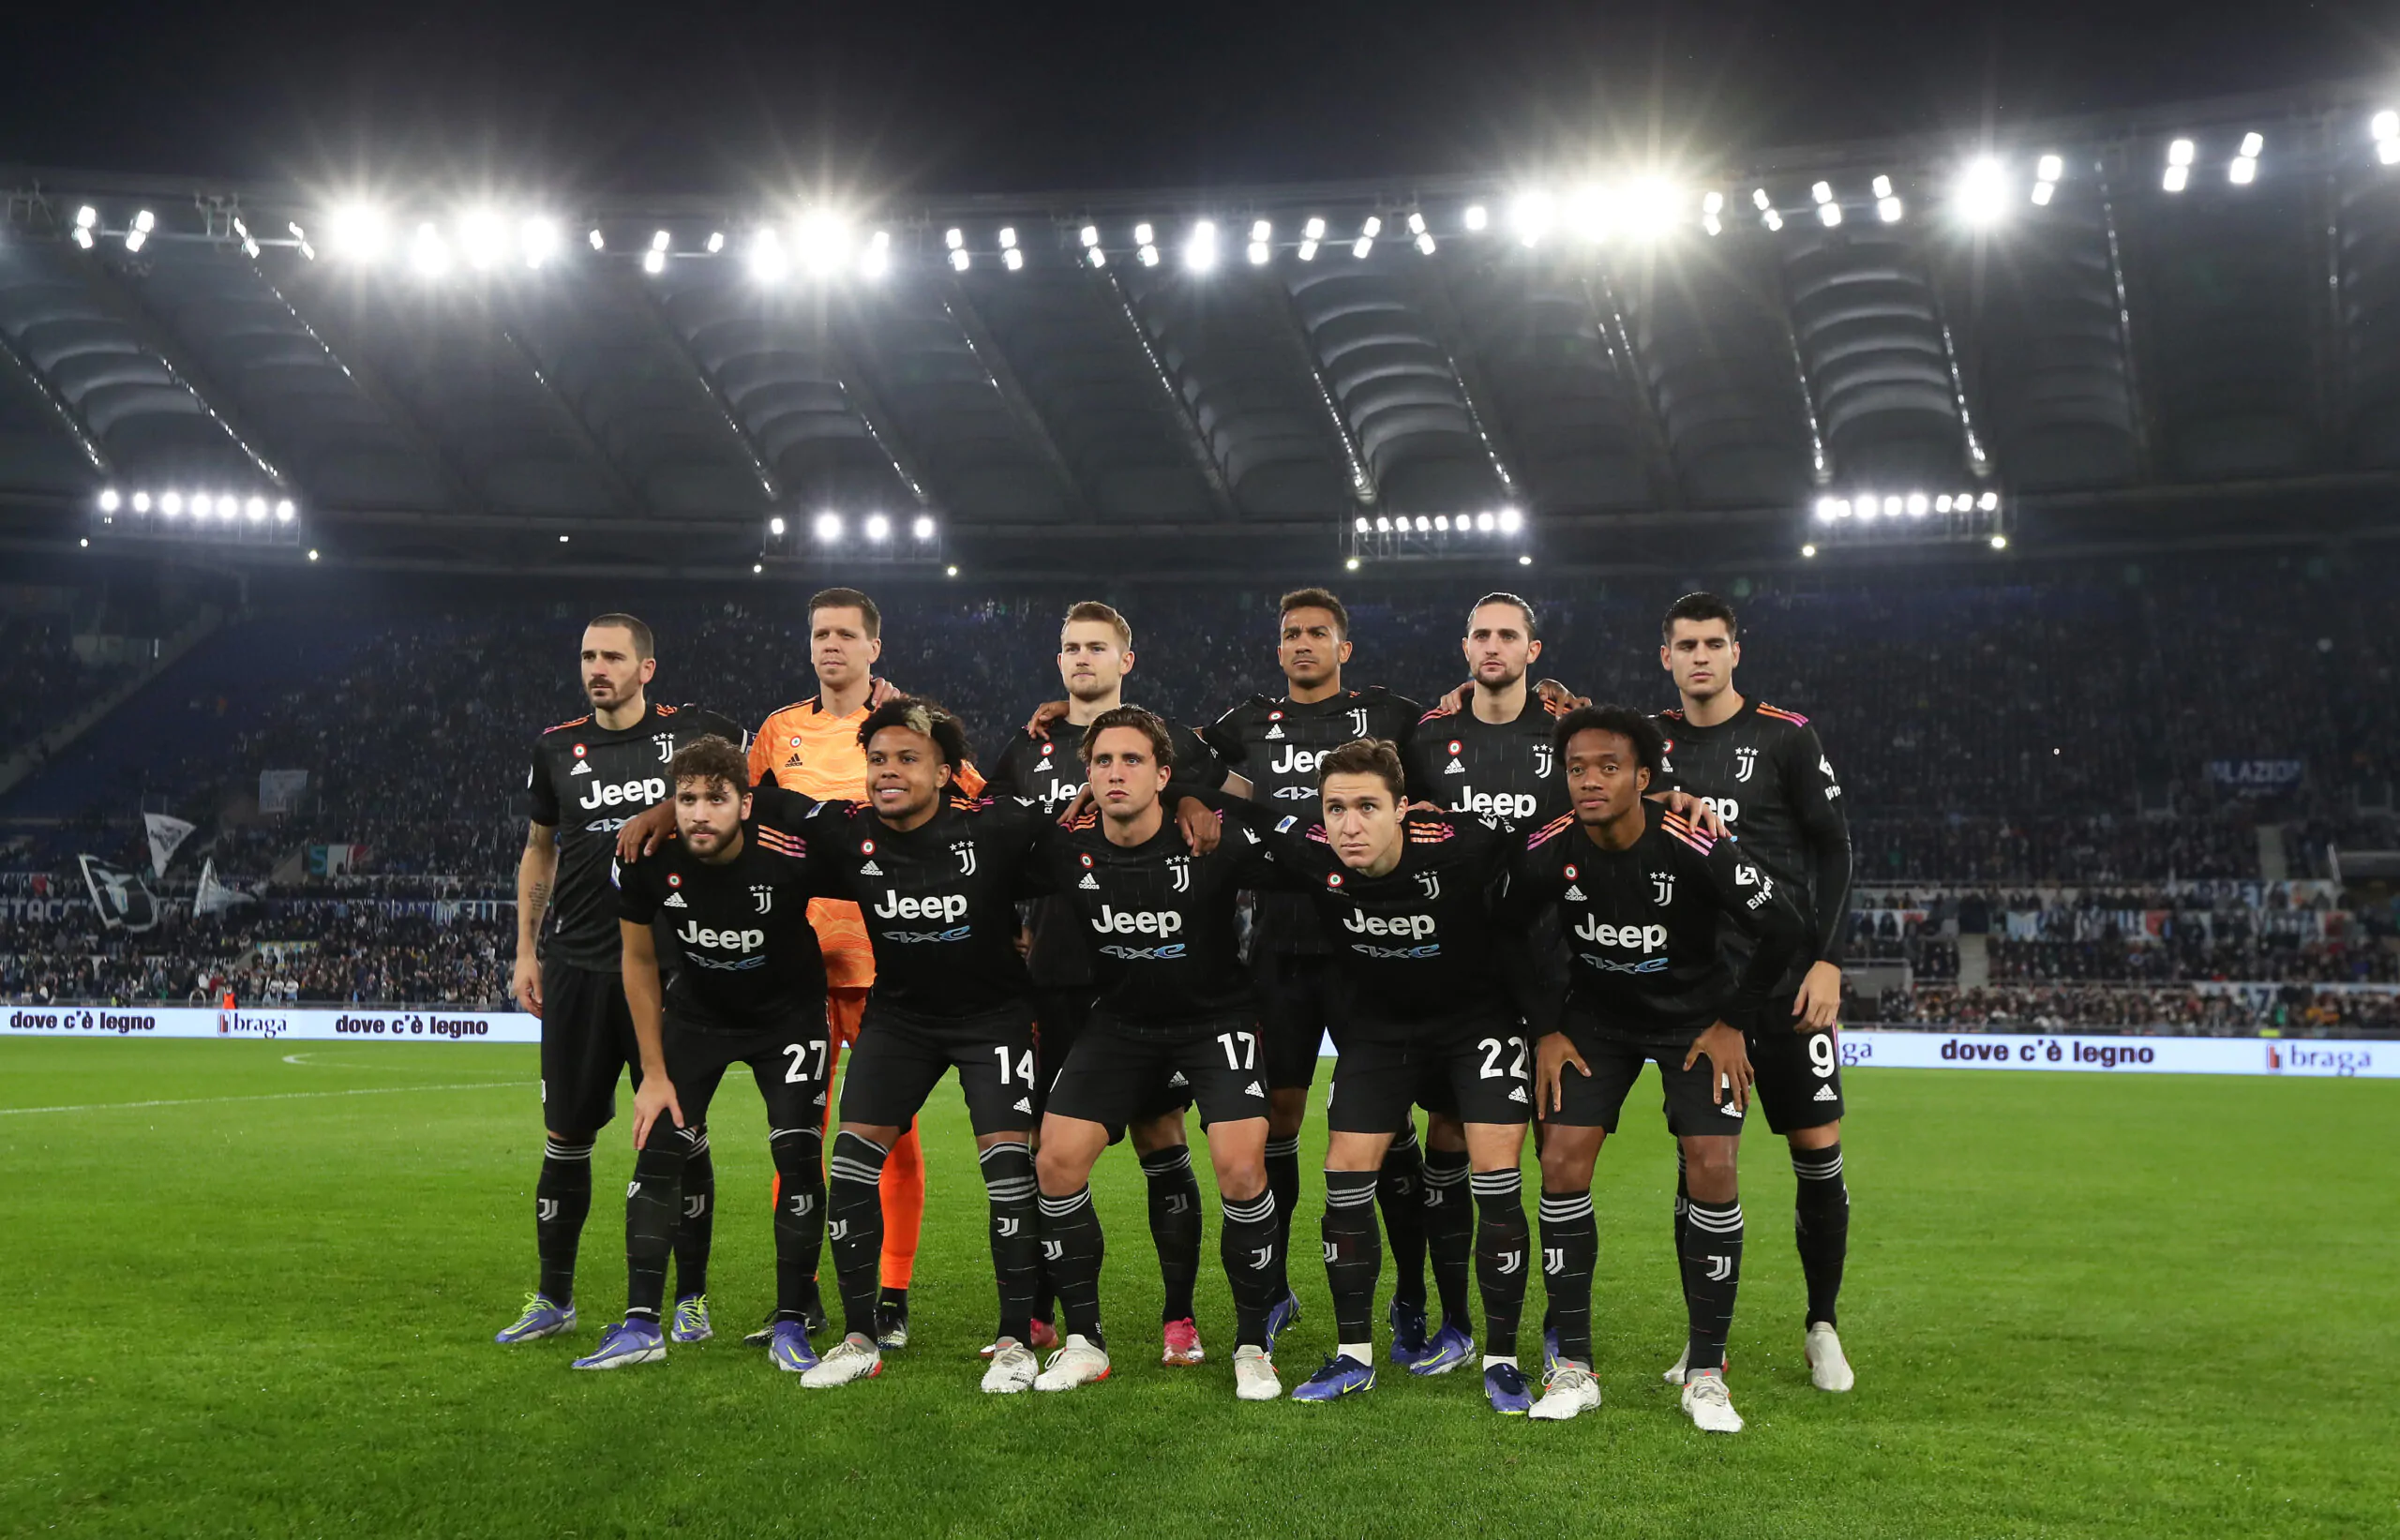 “Scudetto impossibile per questa Juventus”: le parole dell’esperto